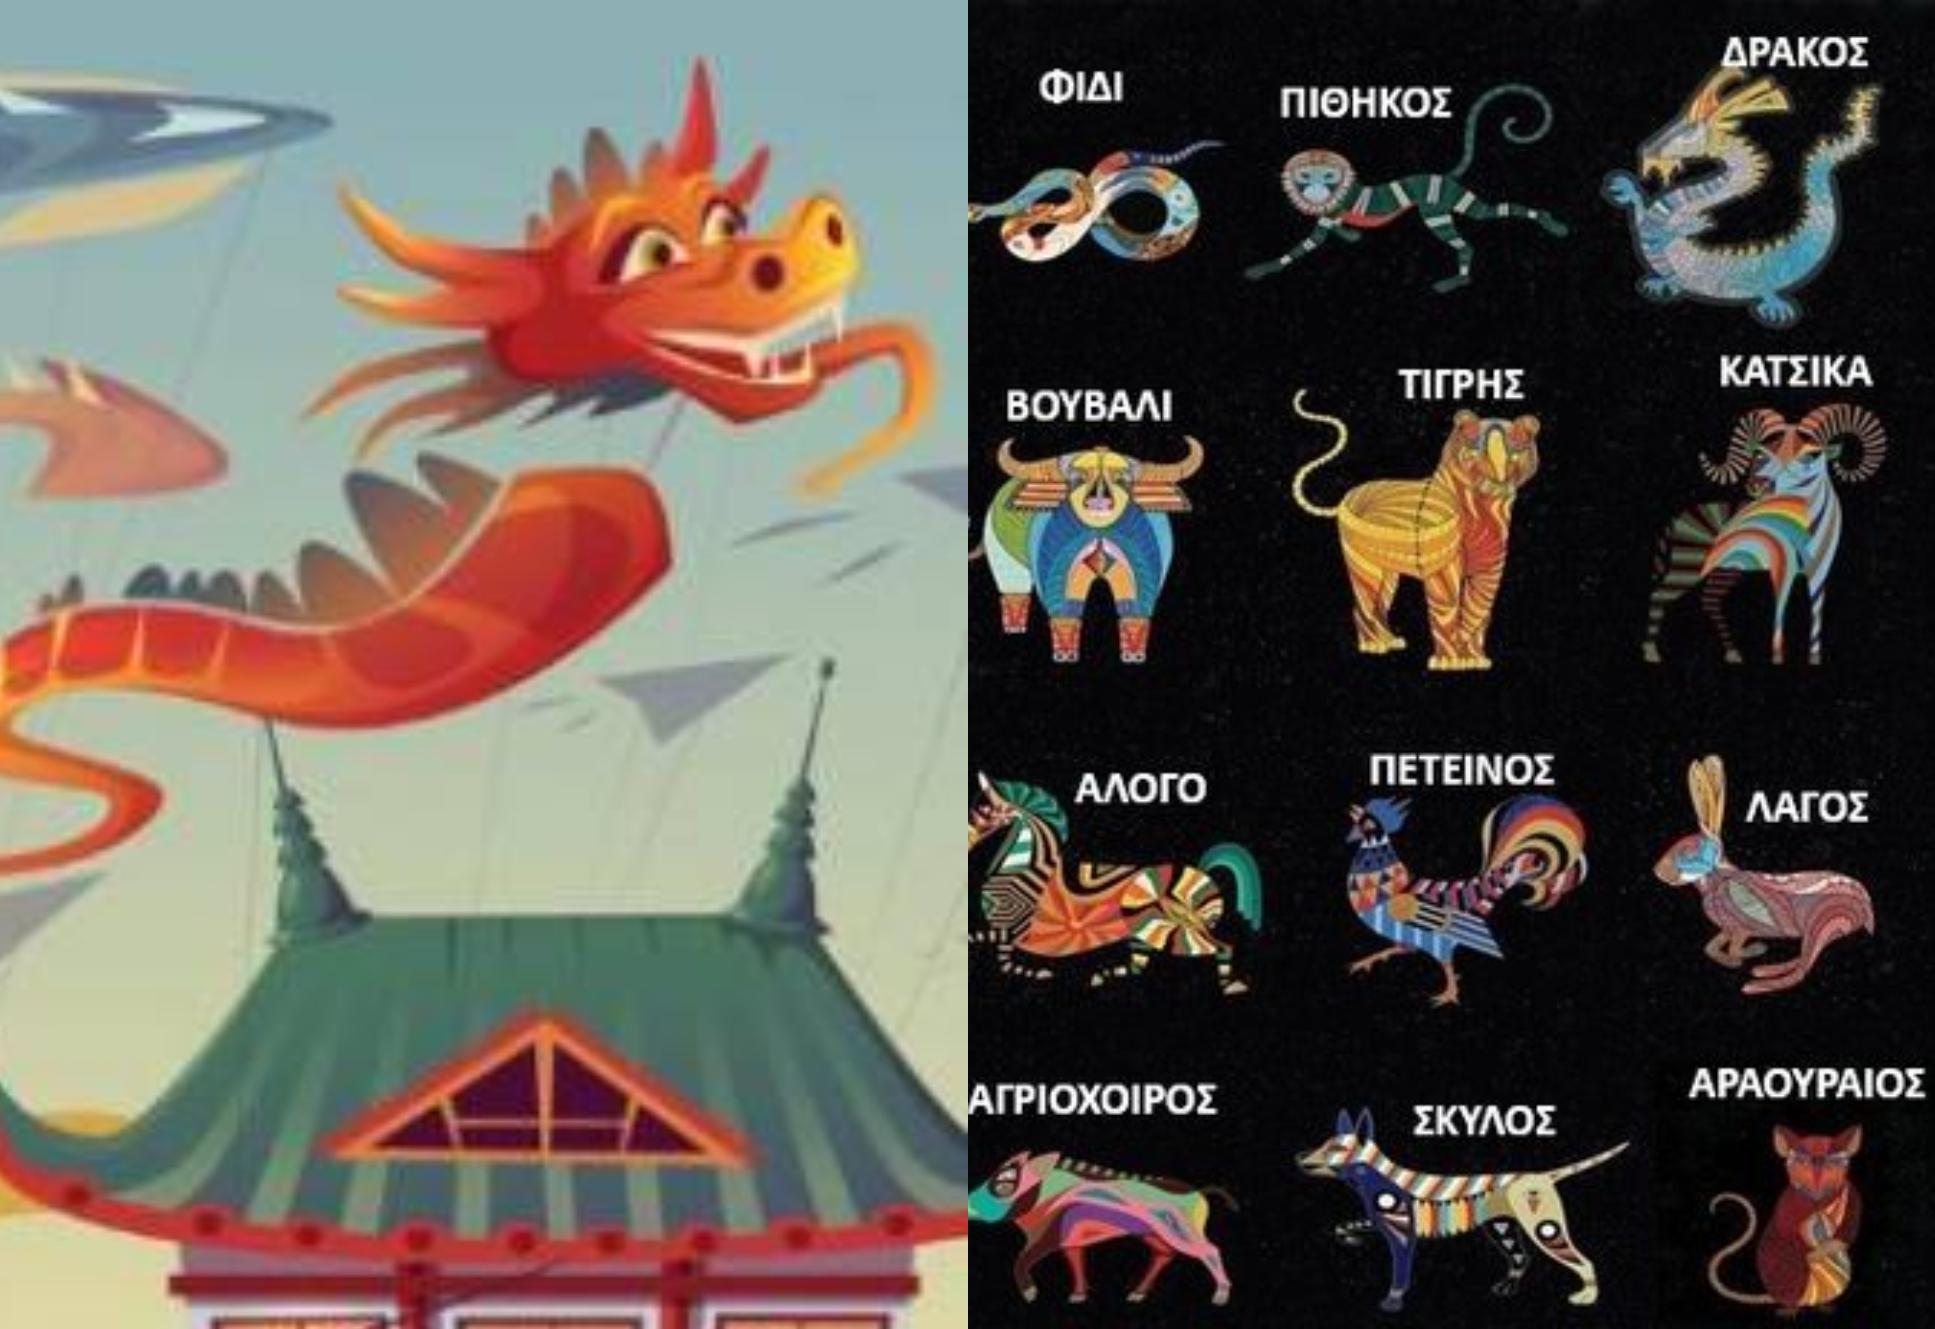 Κινέζικη αστρολογία: Προβλέψεις για όλα τα ζώδια  από 17/07 έως 16/08